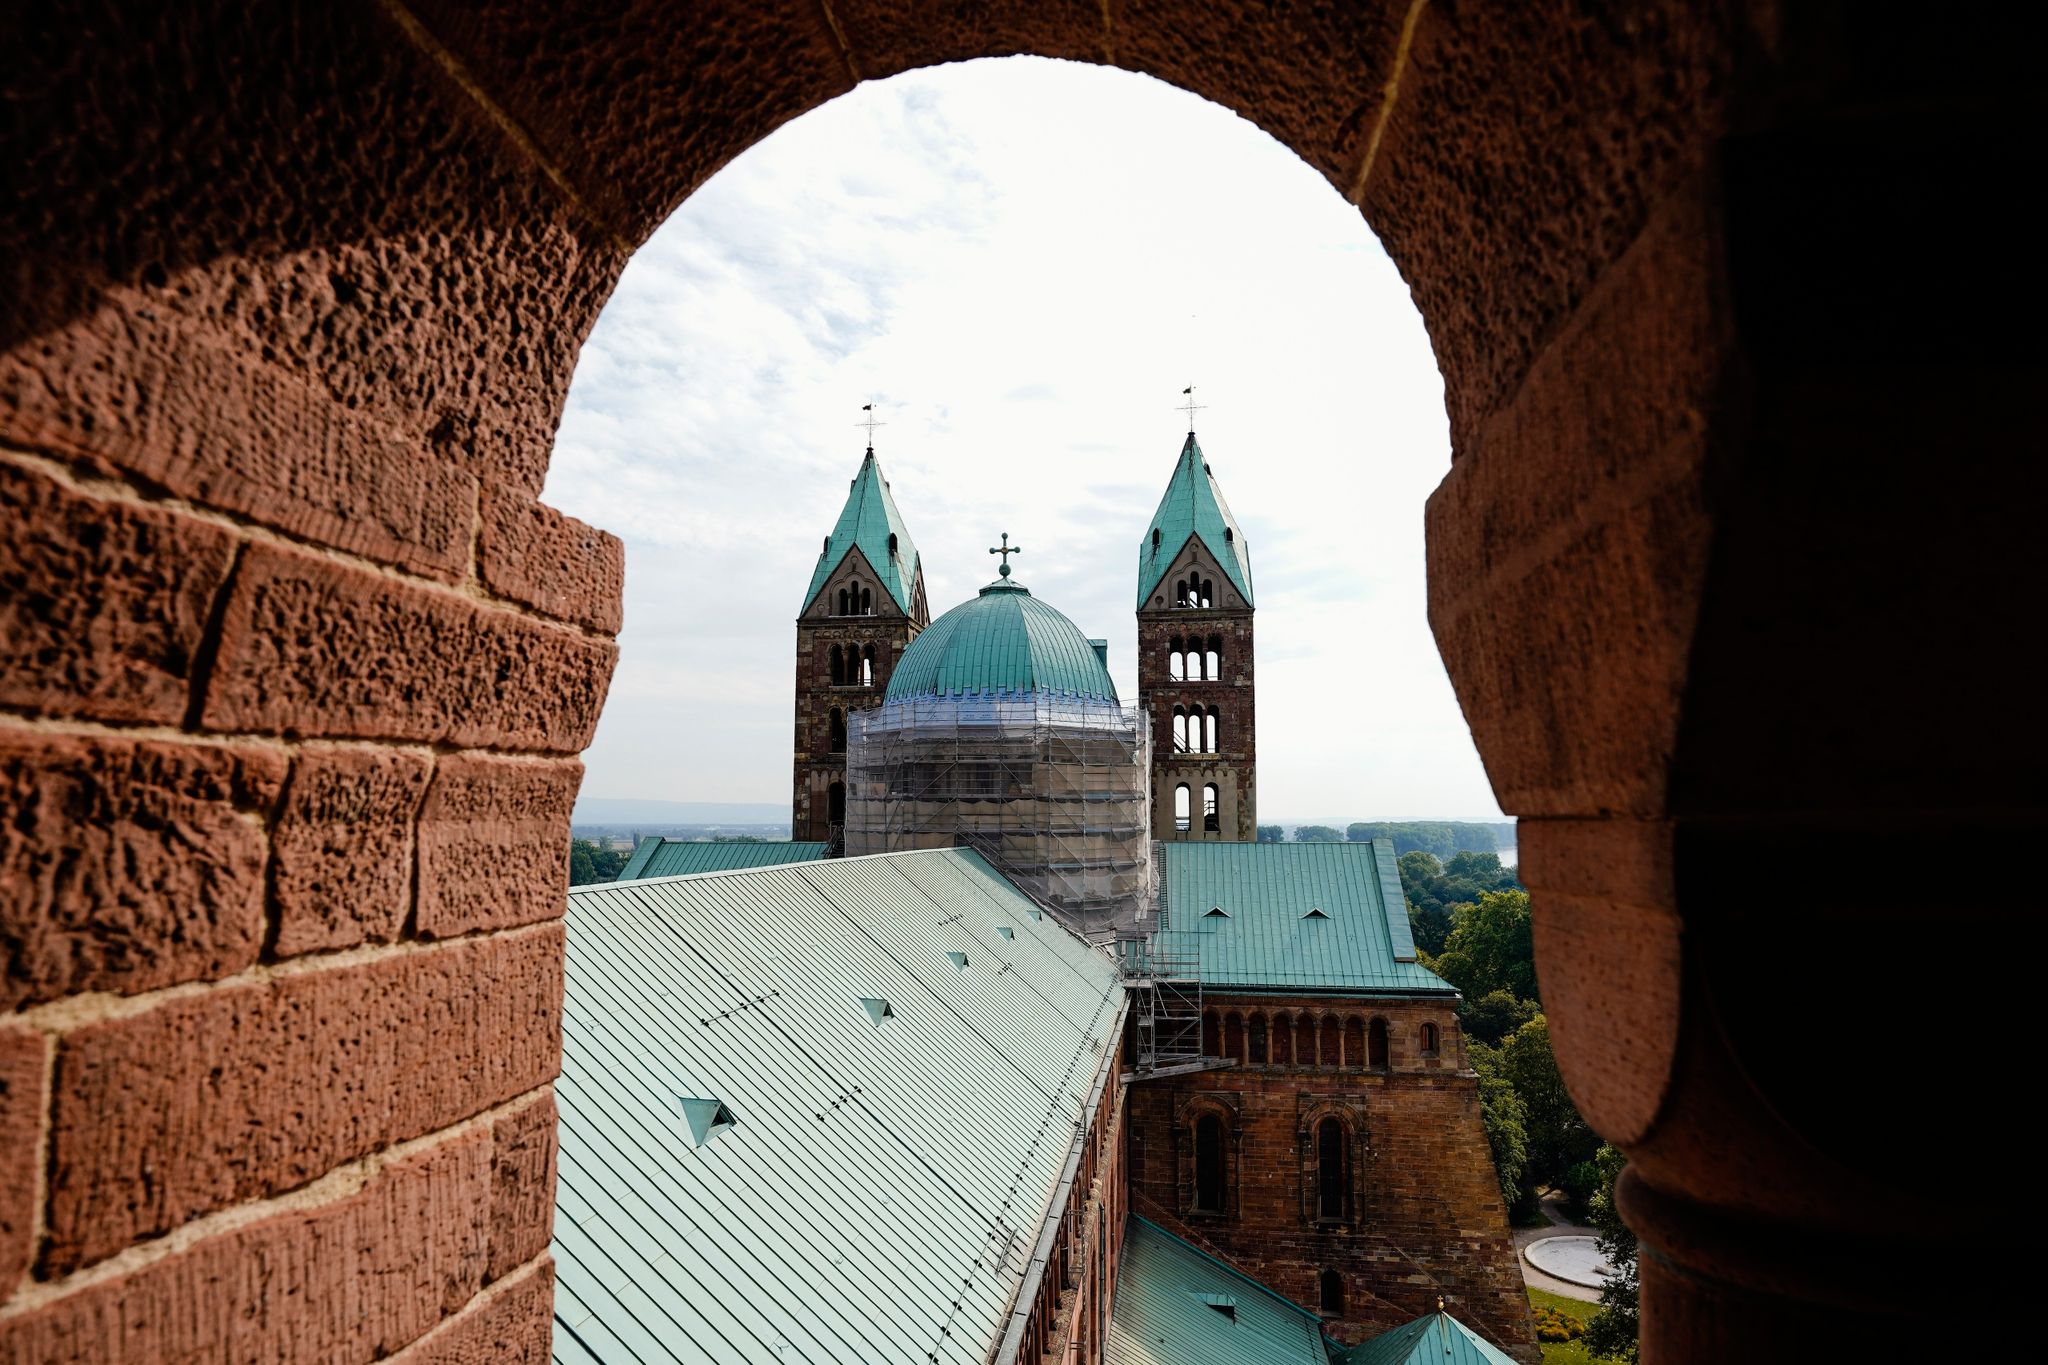 Durch ein Fenster sieht man die zwei östlichen Kirchtürme sowie das Dach des Mittelschiffs des Doms zu Speyer.